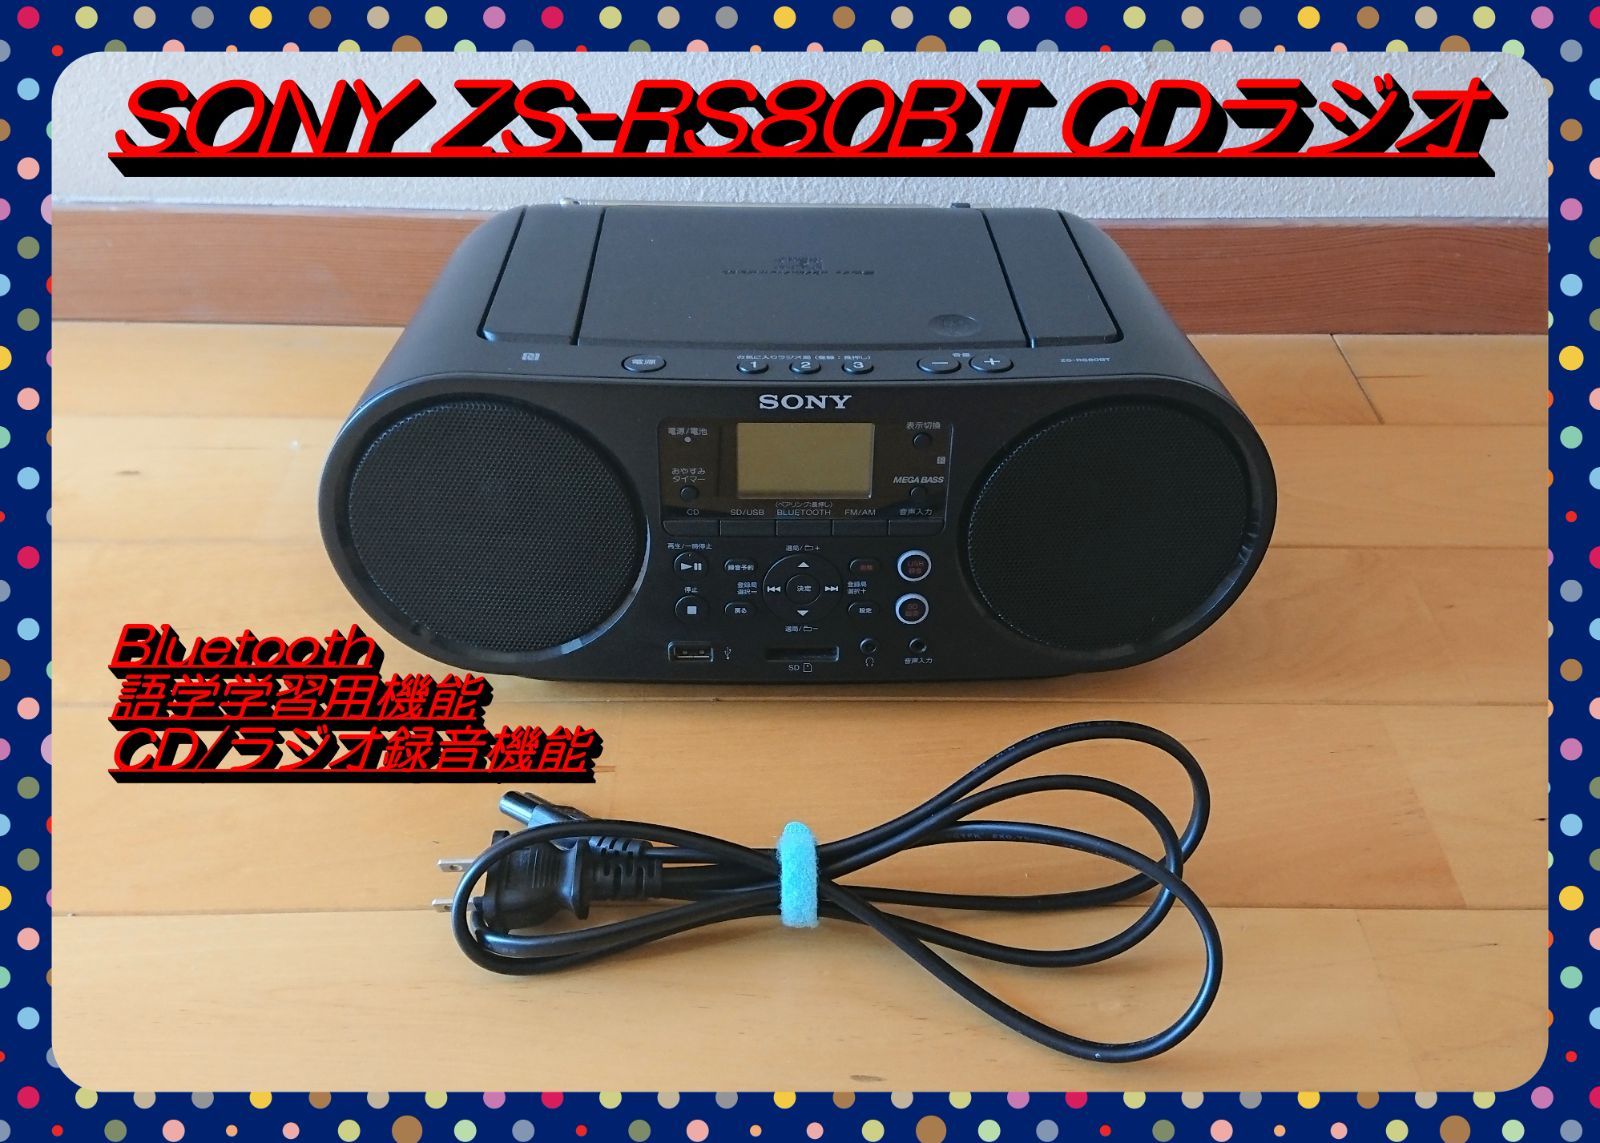 タイムセール中!!】SONY CDラジオ ZS-RS80BT Bluetooth対応 黒